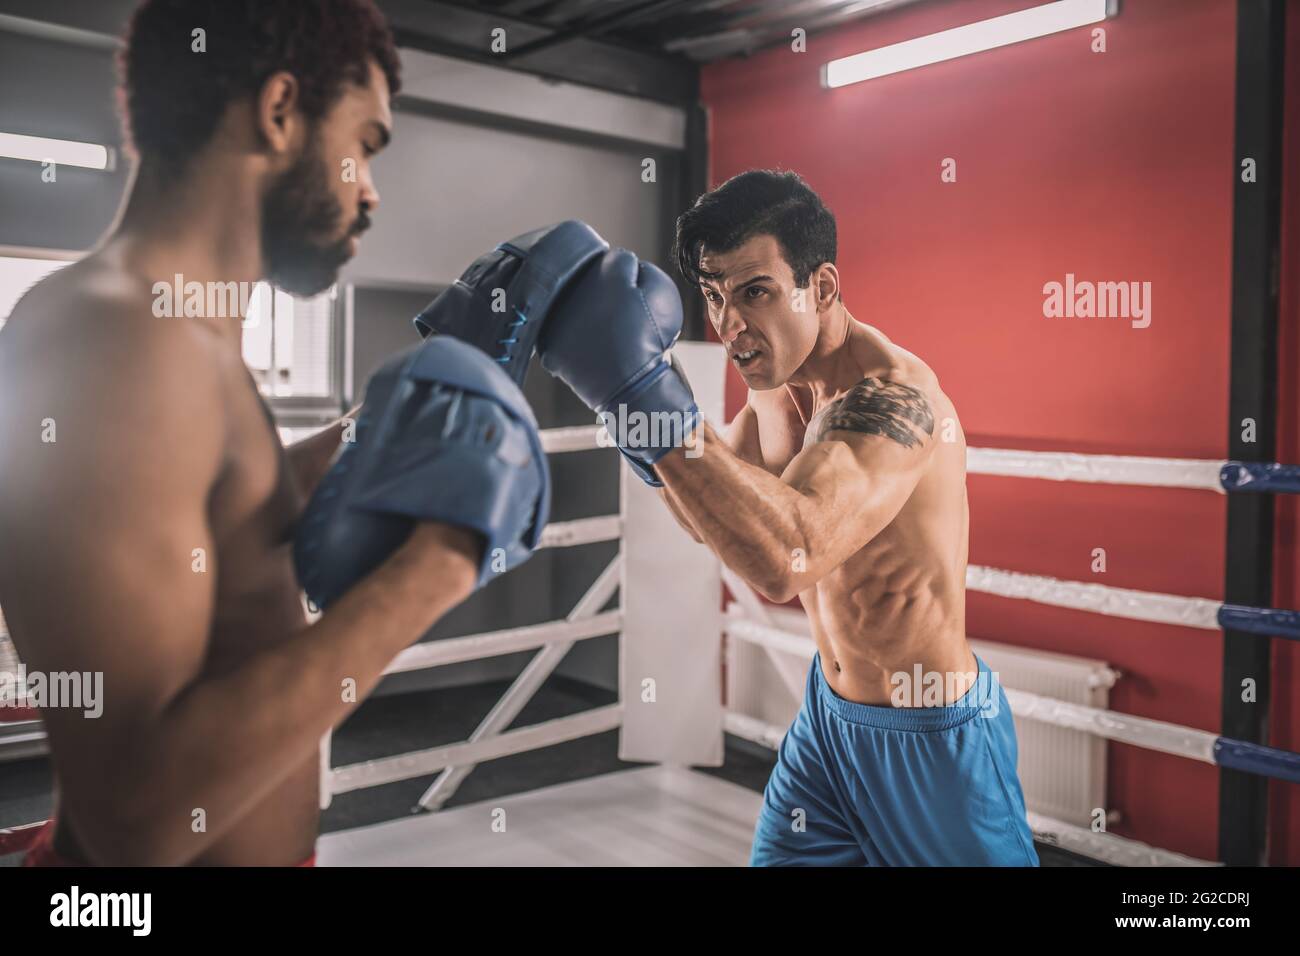 Junge Männer kämpfen auf einem Boxring und sehen entschlossen aus Stockfoto